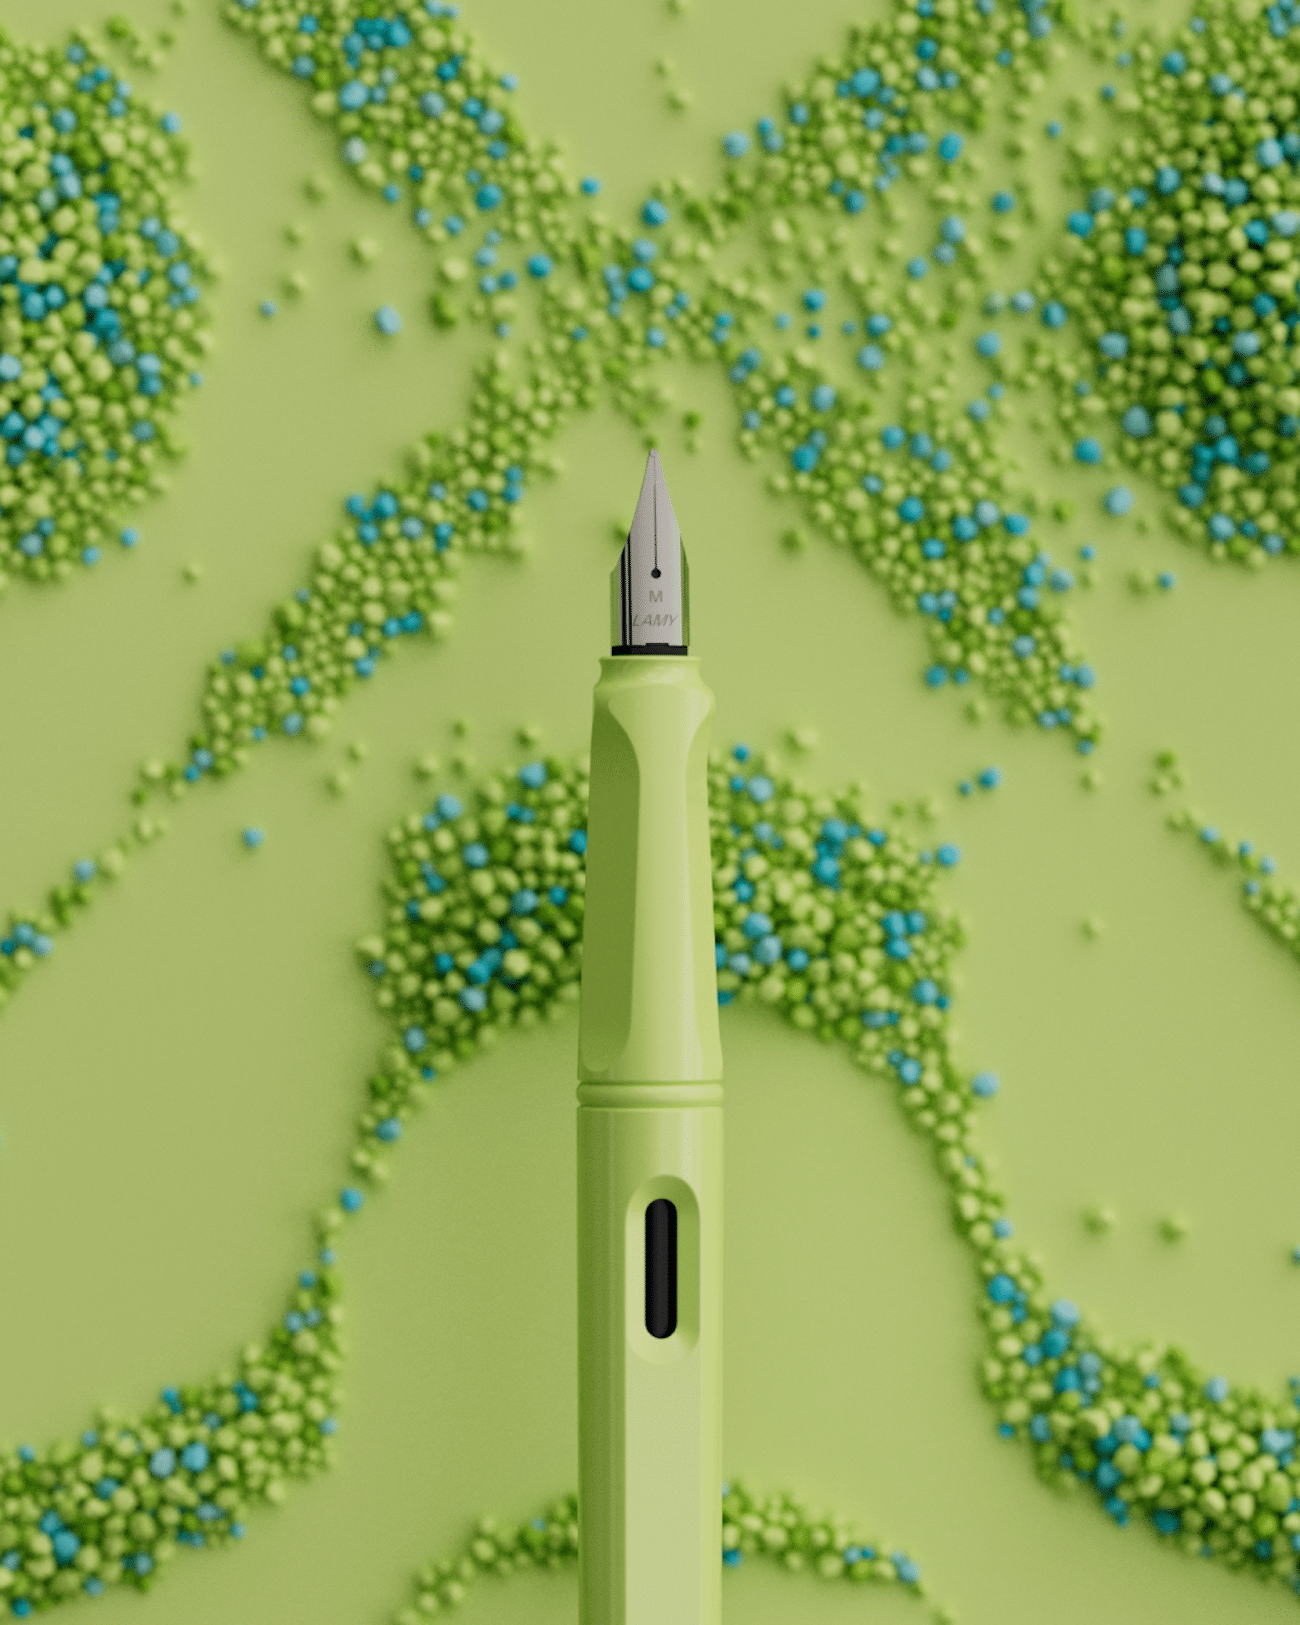 Ein Lamy-Füller Modell safari schwebend auf grünem Hintergrund mit chladnischen Granulatmustern, in der Farben Limette